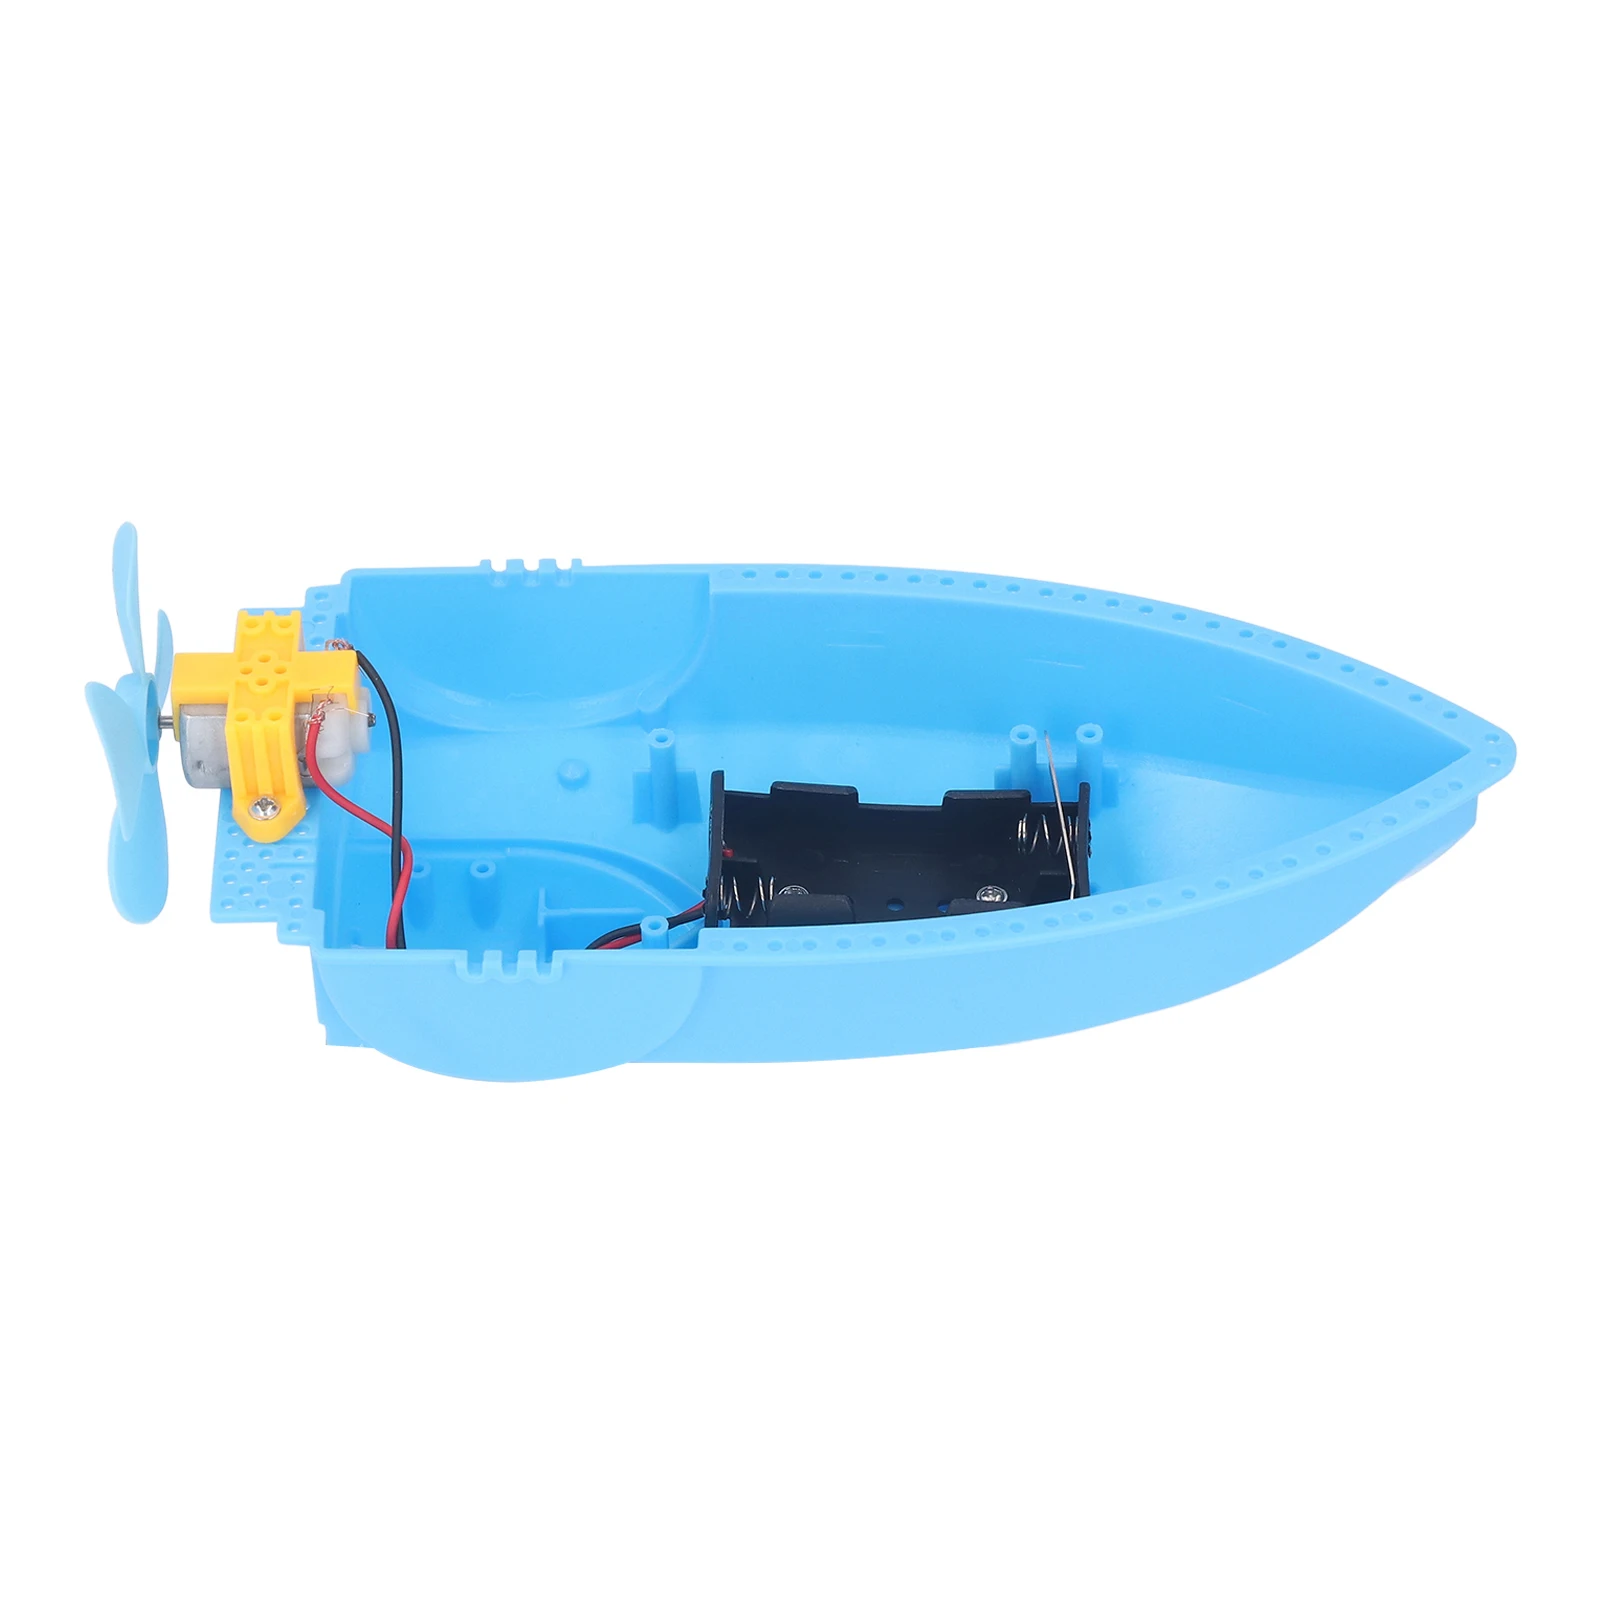 Катер из пластика — без матриц. Технология постройки лодок из пластика